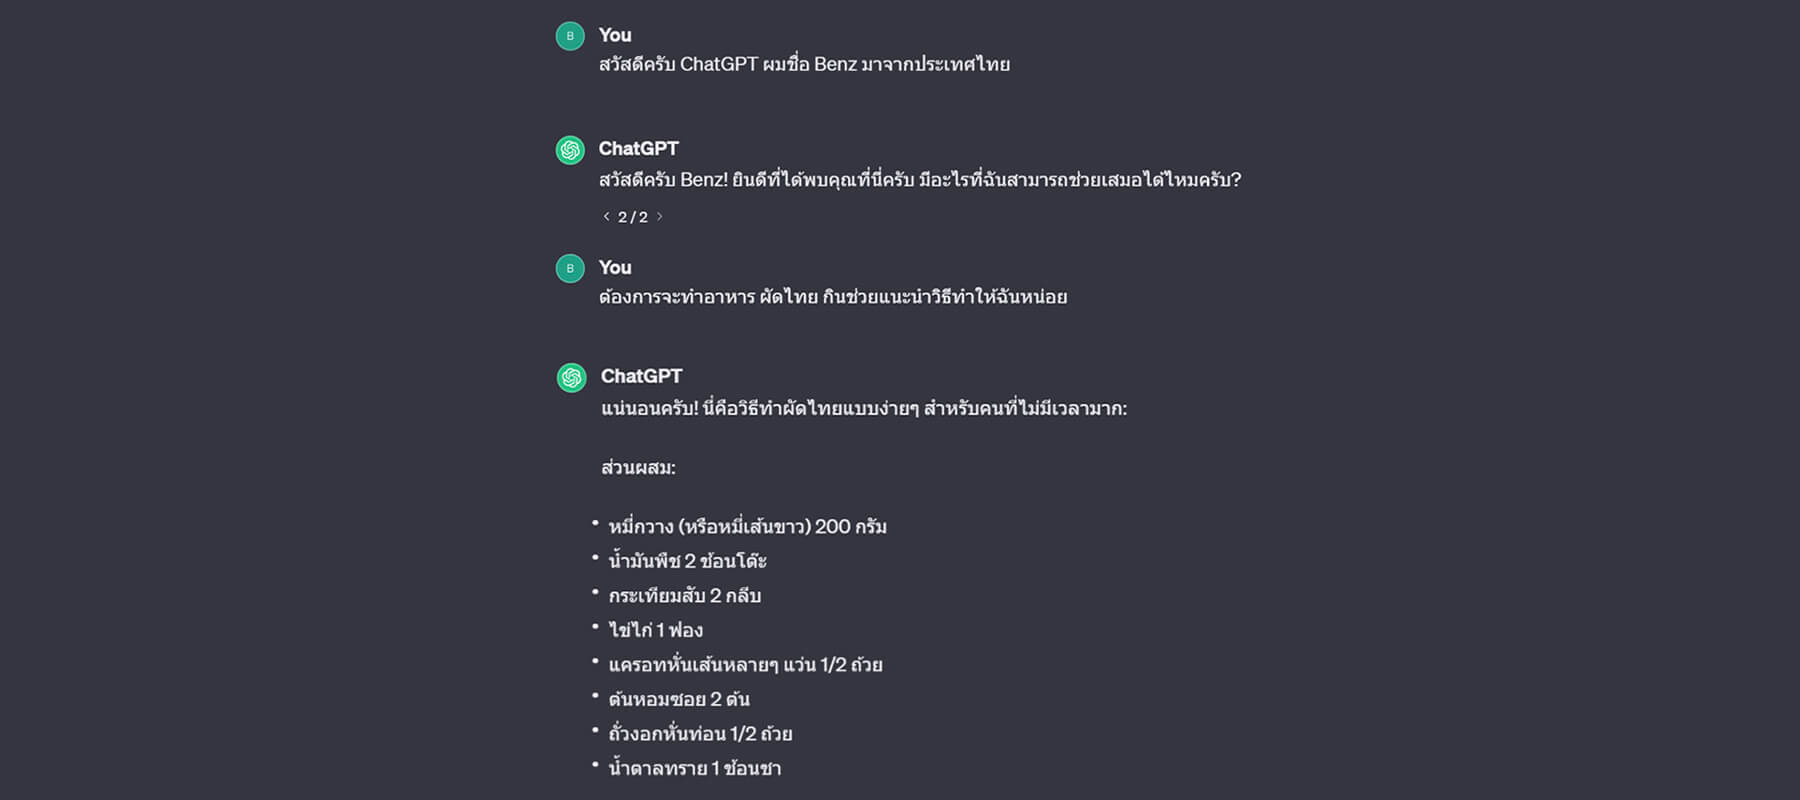 เปิดตัว “21 ชุดคำสั่งภาษาไทย” ทางลัดสู่ผลลัพธ์สุดปัง!